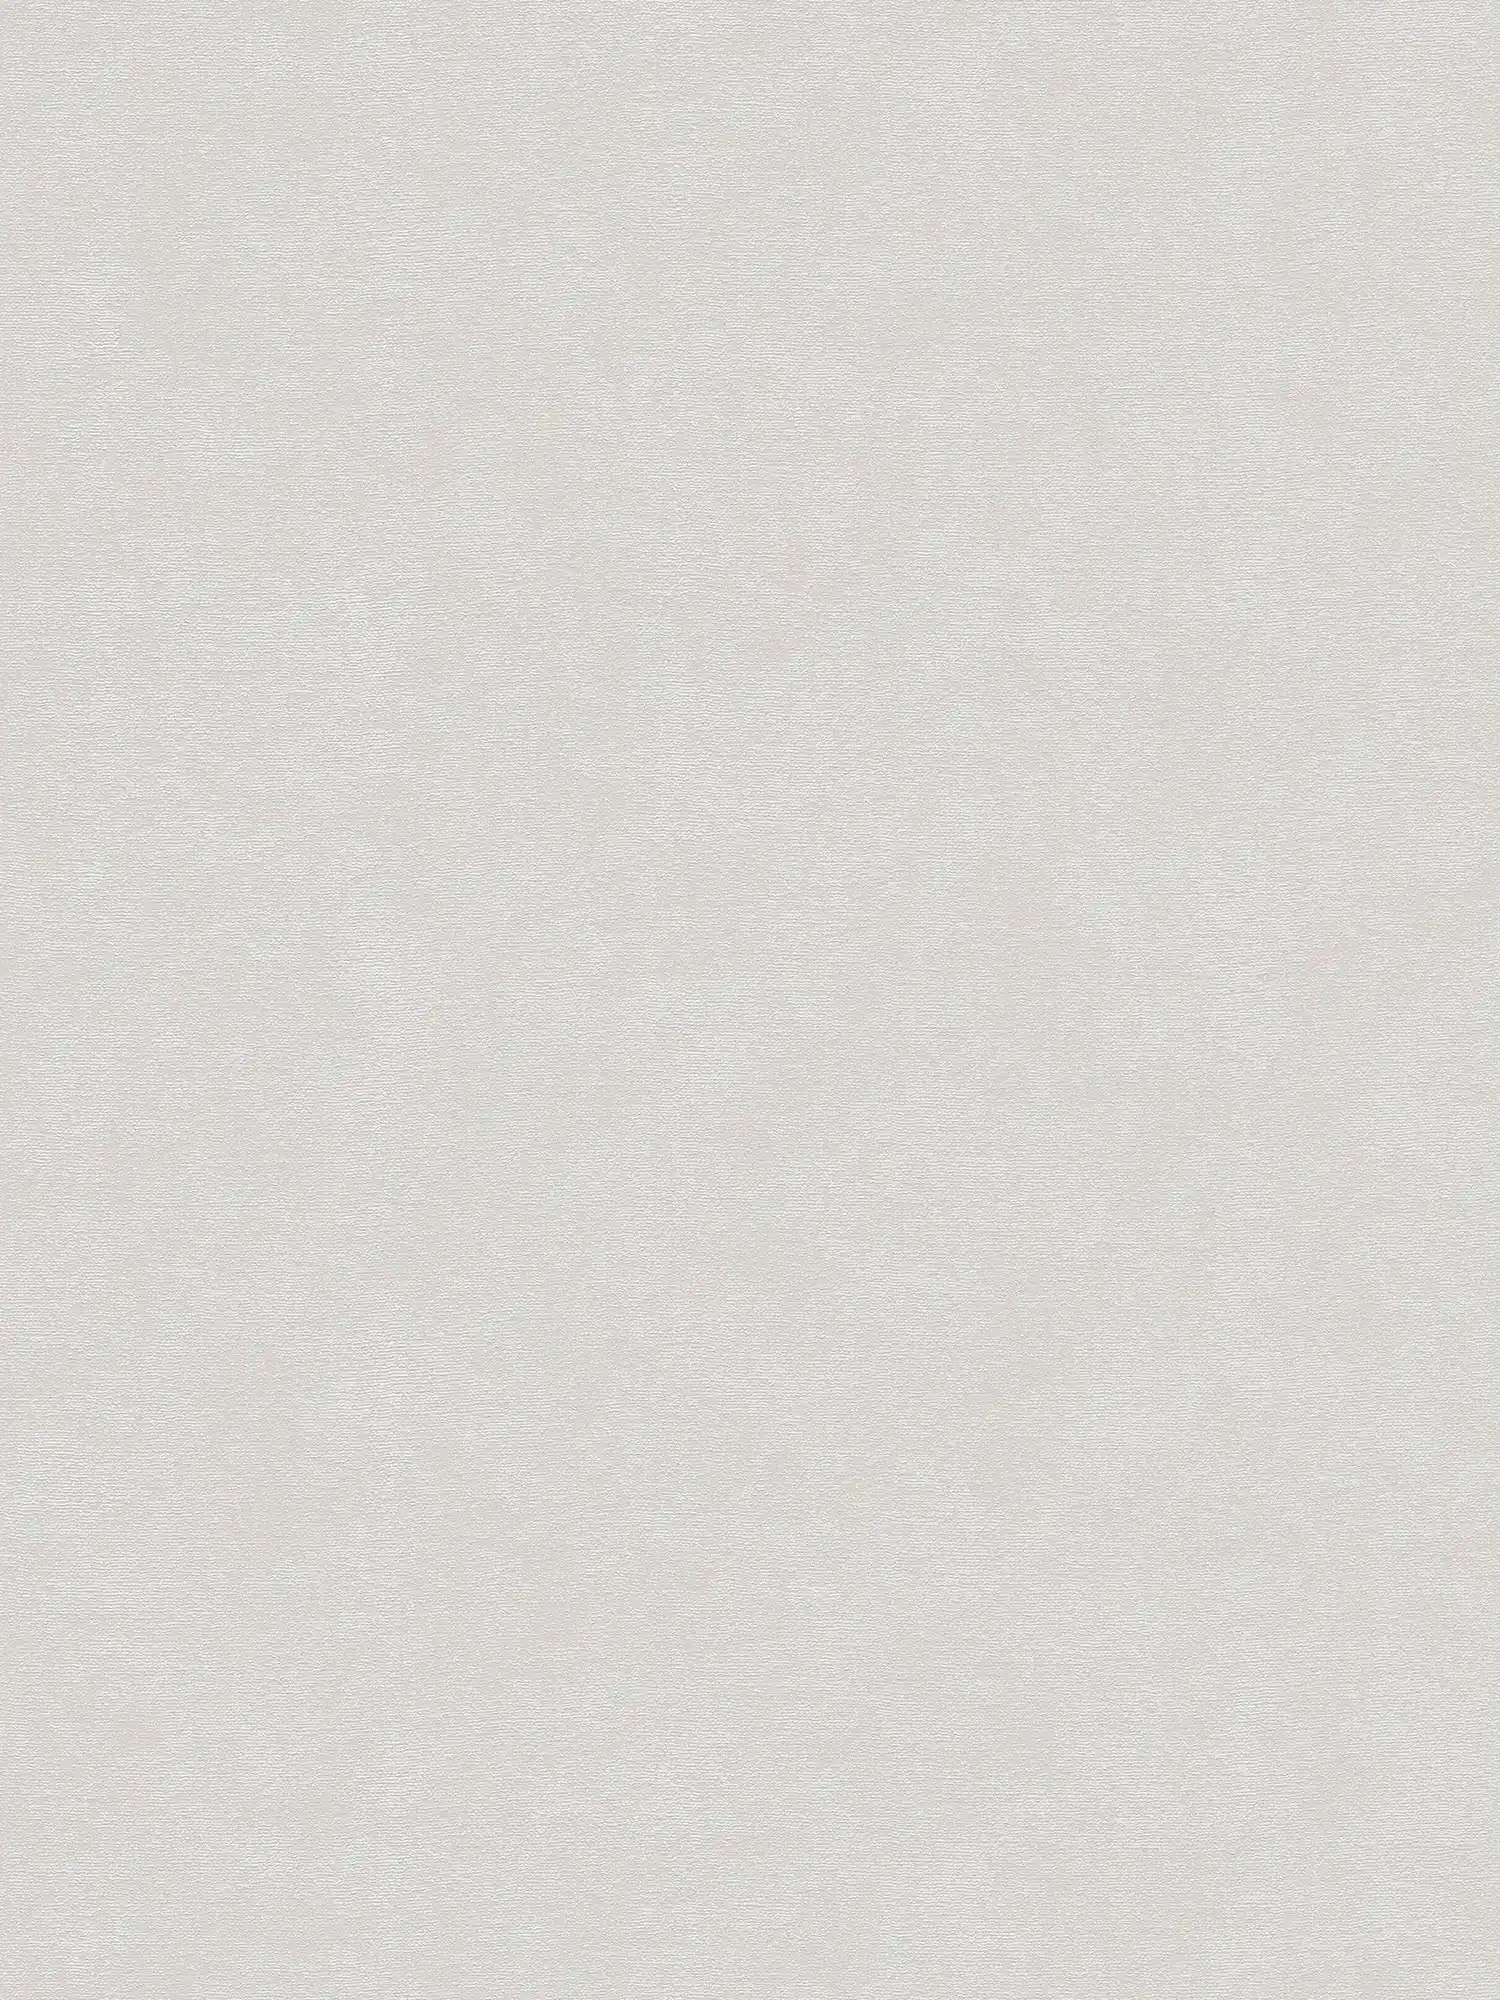 Single-coloured non-woven wallpaper with a light texture - grey
